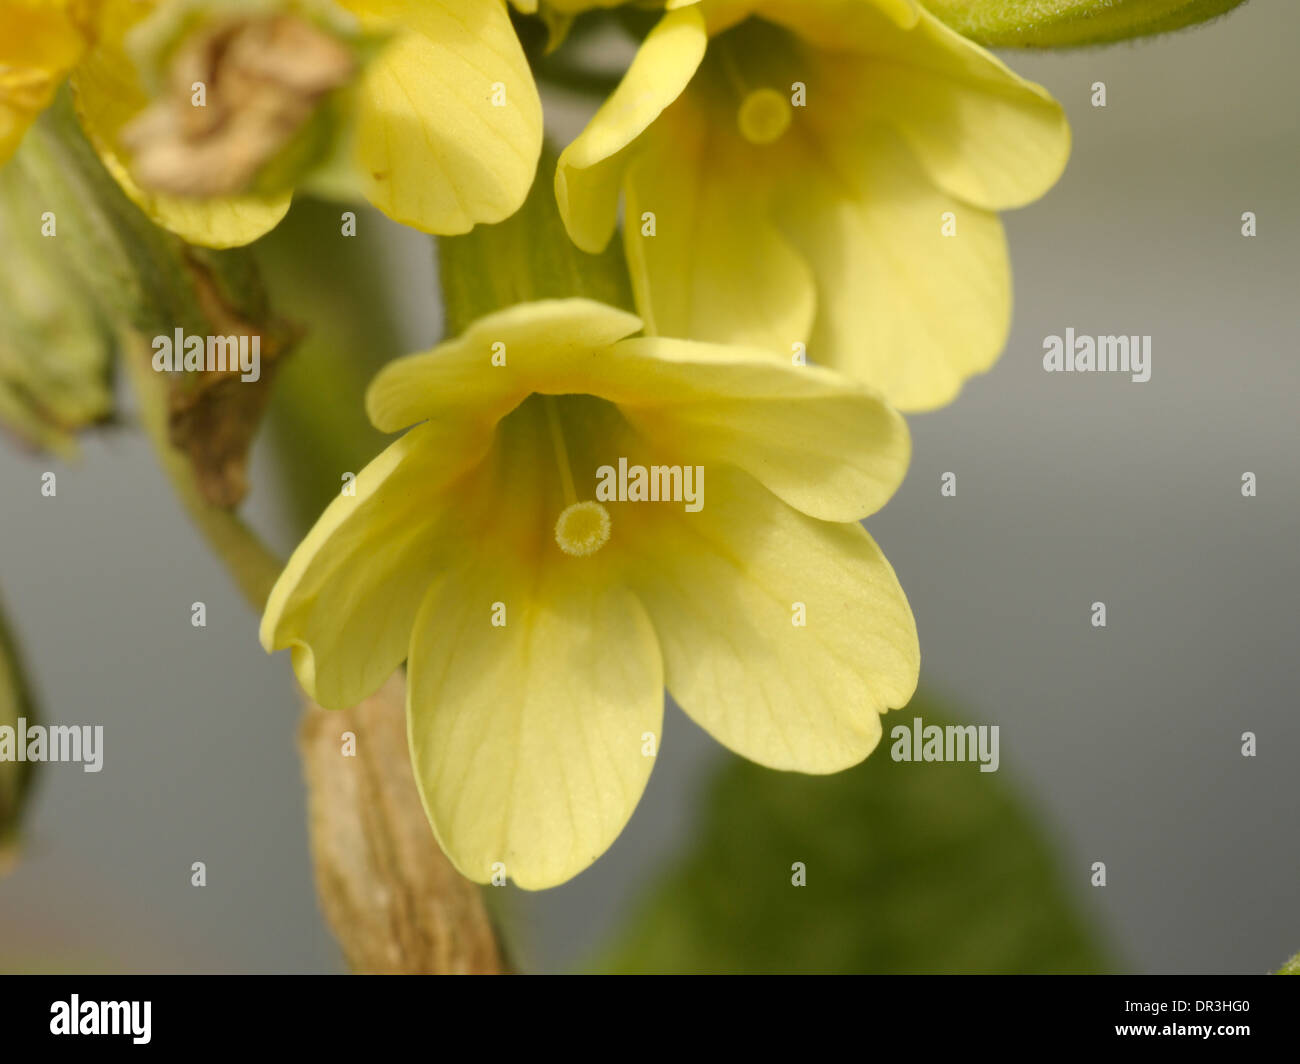 Oxlip, Primula elatior Stock Photo